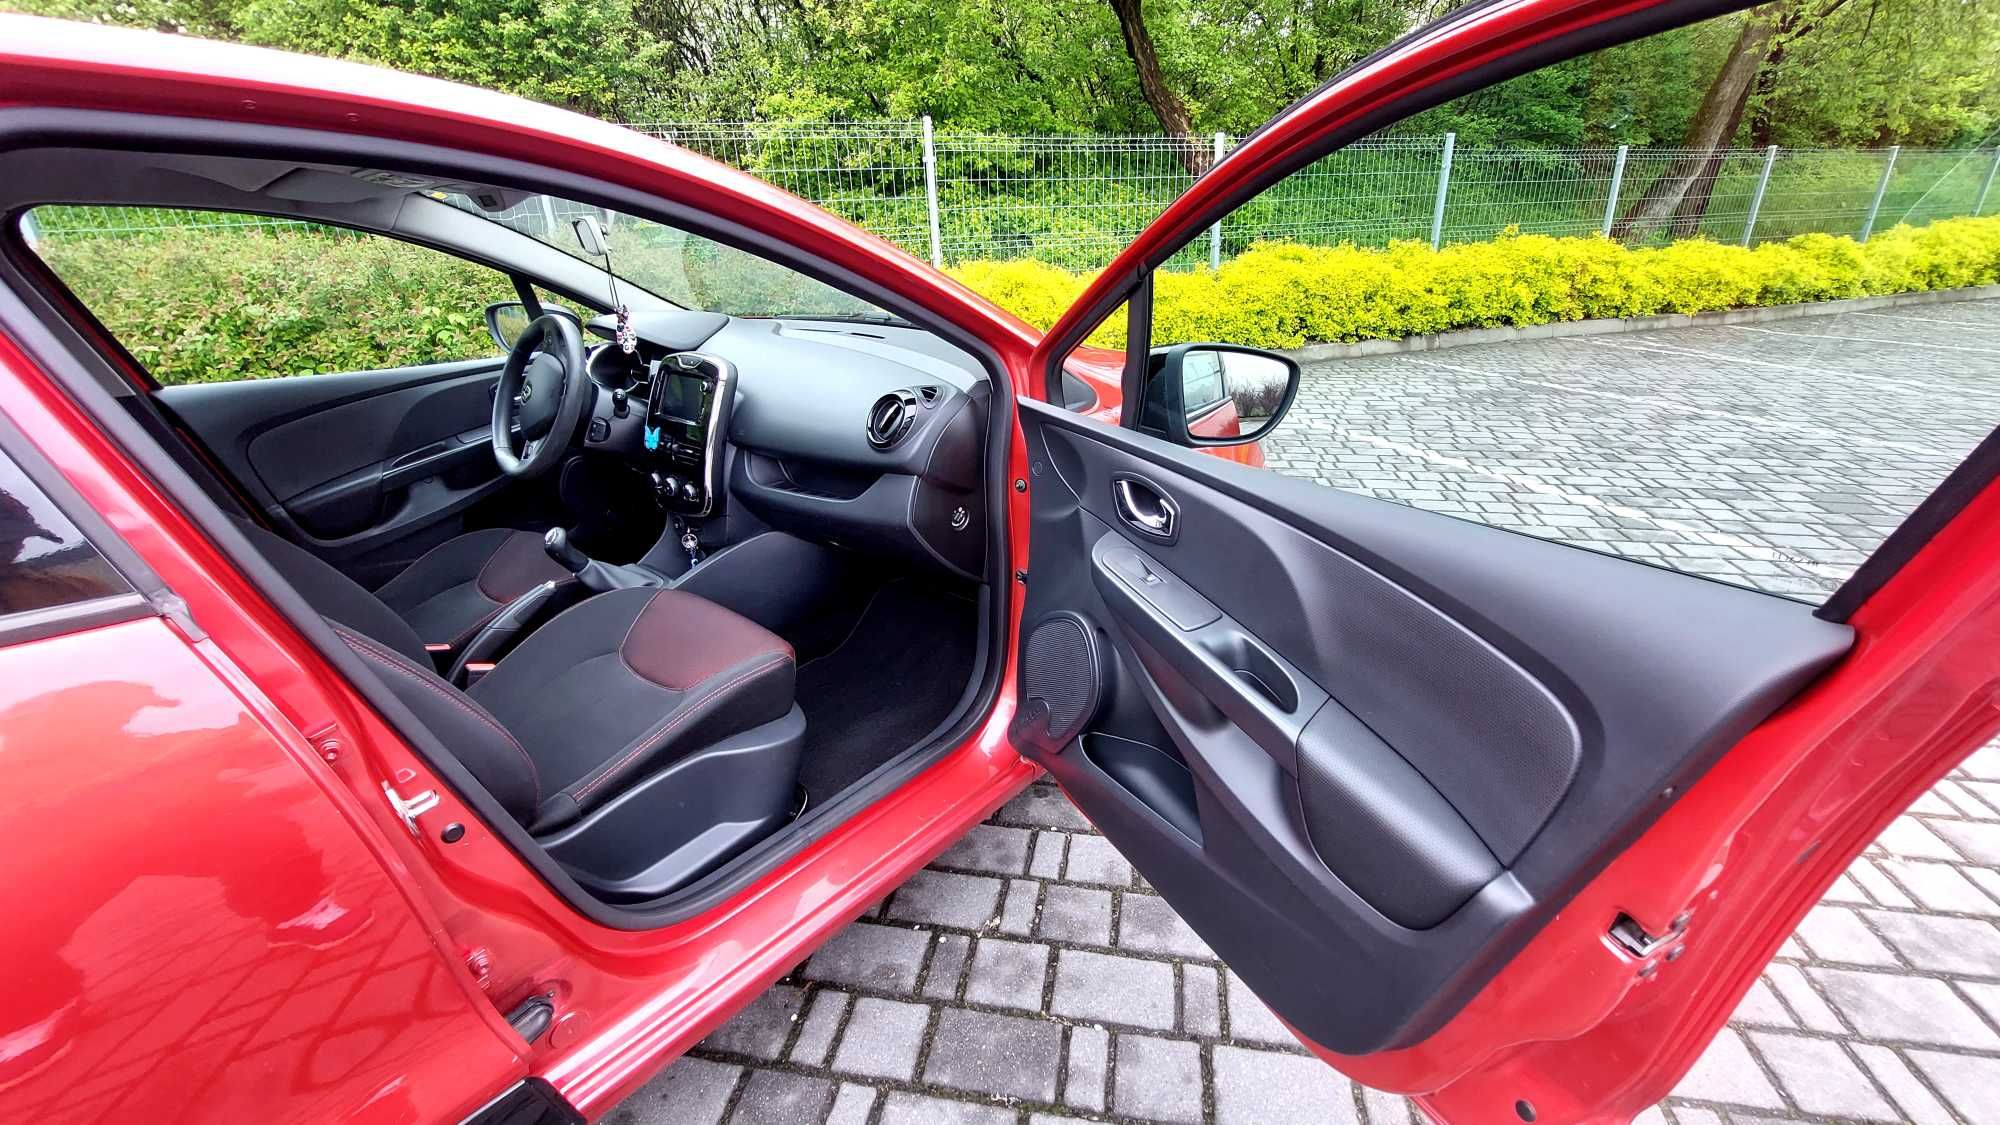 Renault Clio IV czerwony 0.9  90 KM2013